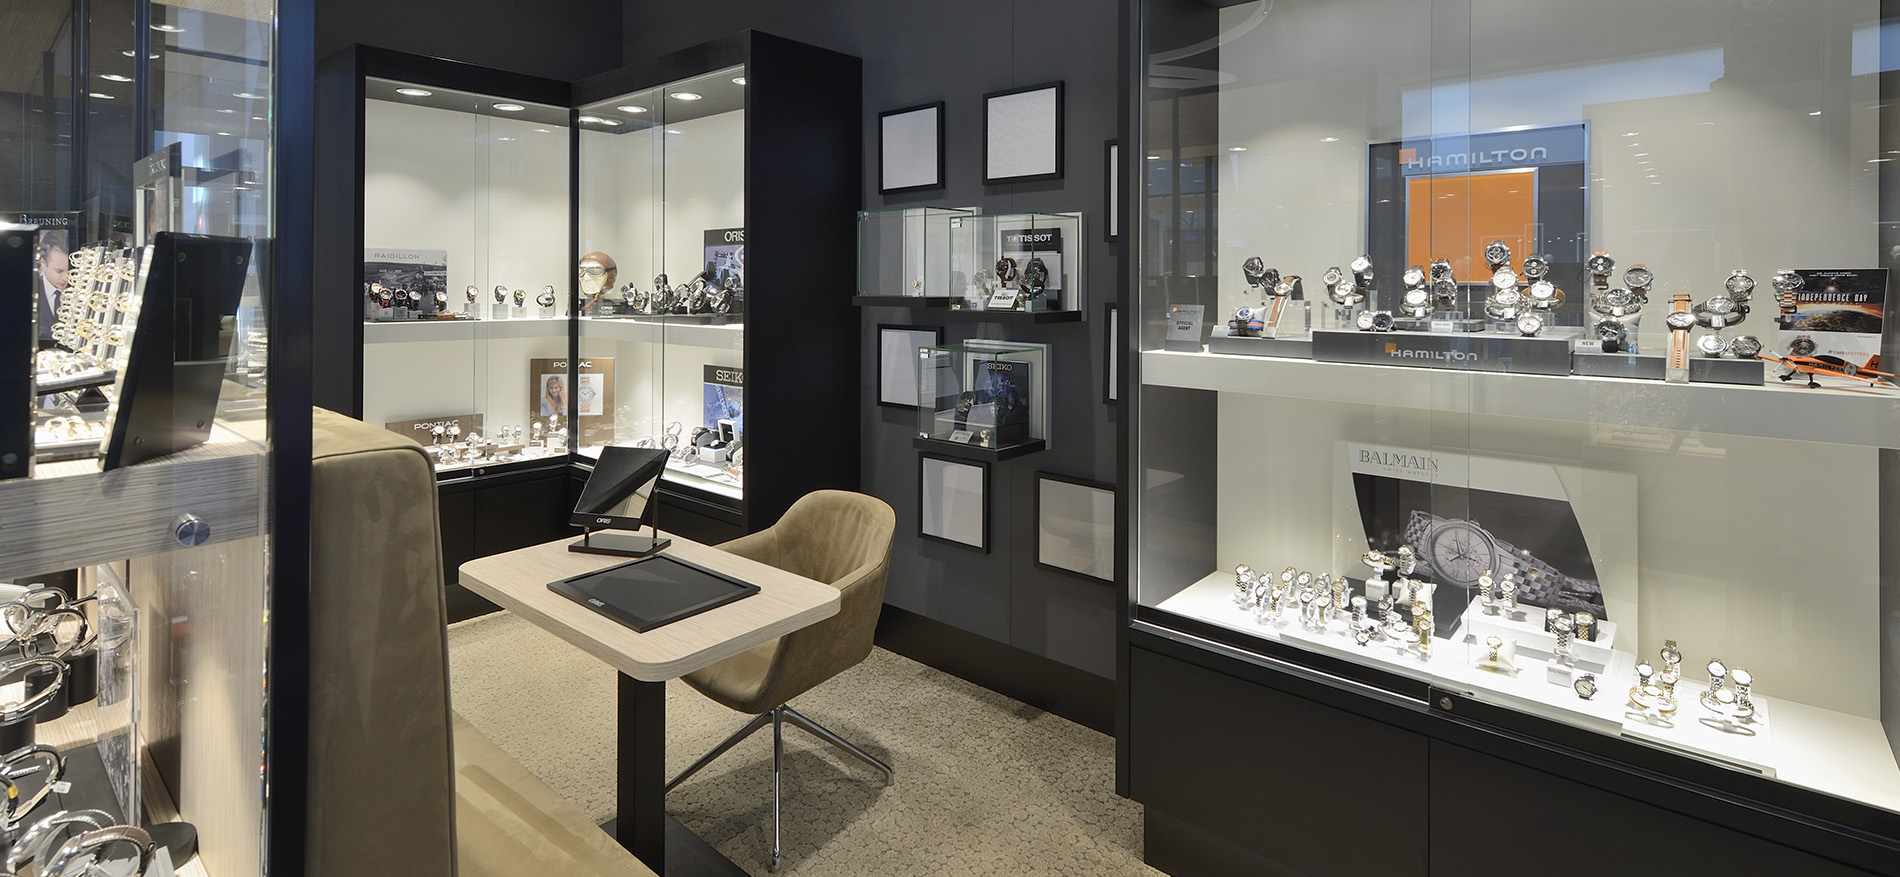 Bijouterie Laurent – Mons (BE): Stijlvolle winkelinrichting juwelier - Juweliers